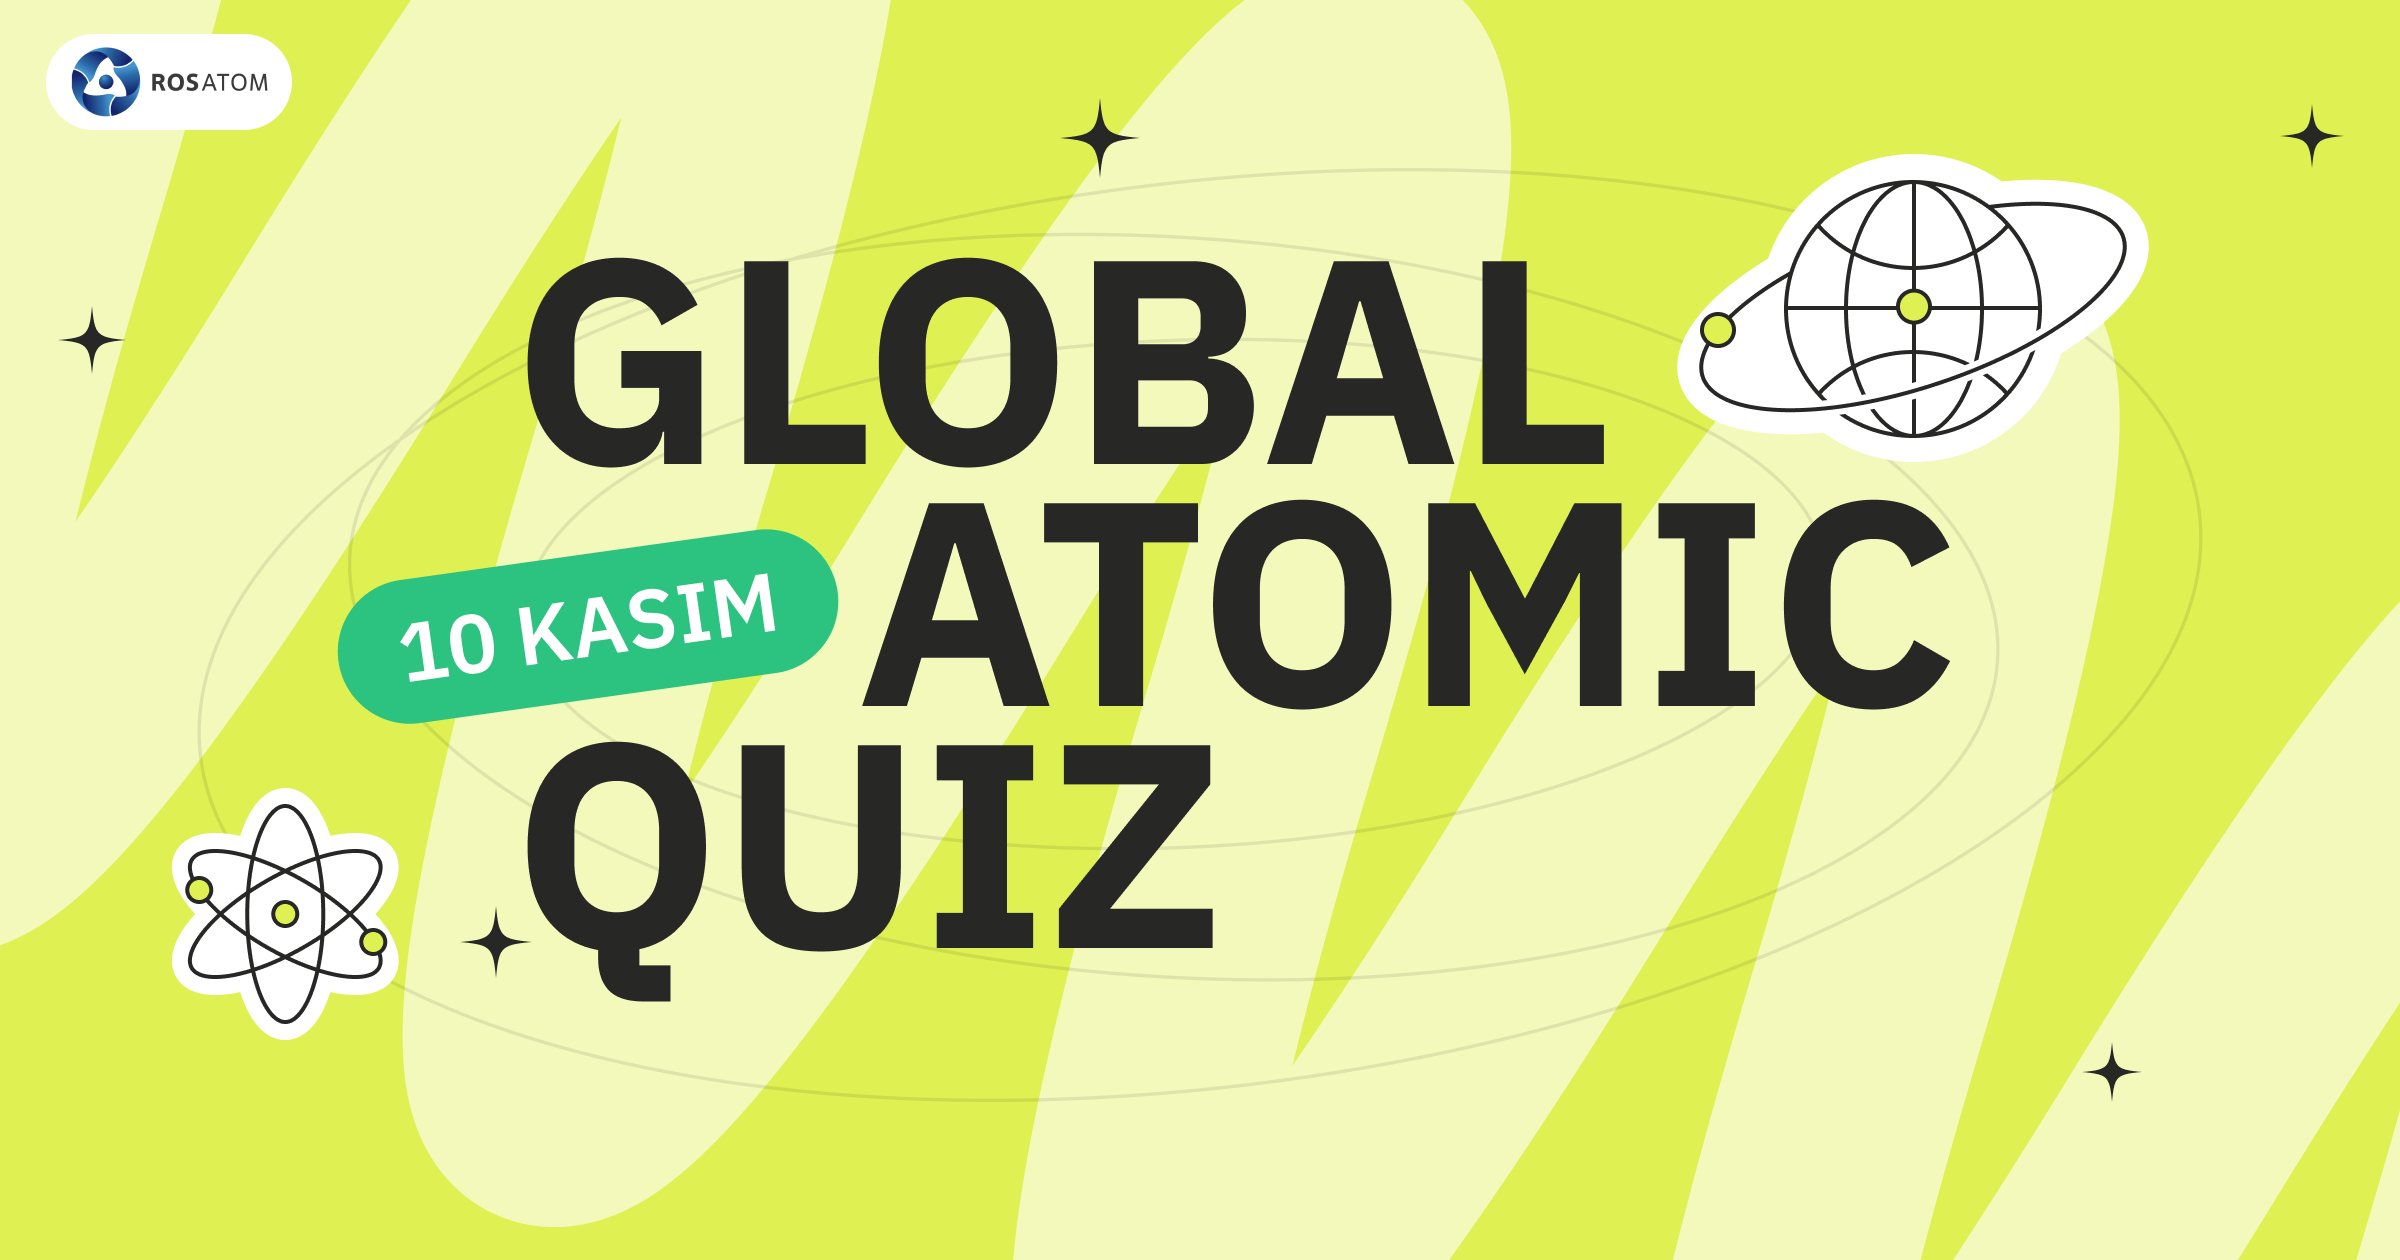 ROSATOM, 10 Kasım Dünya Bilim Günü’nde Atomic Quiz Etkinliğini Başlatıyor